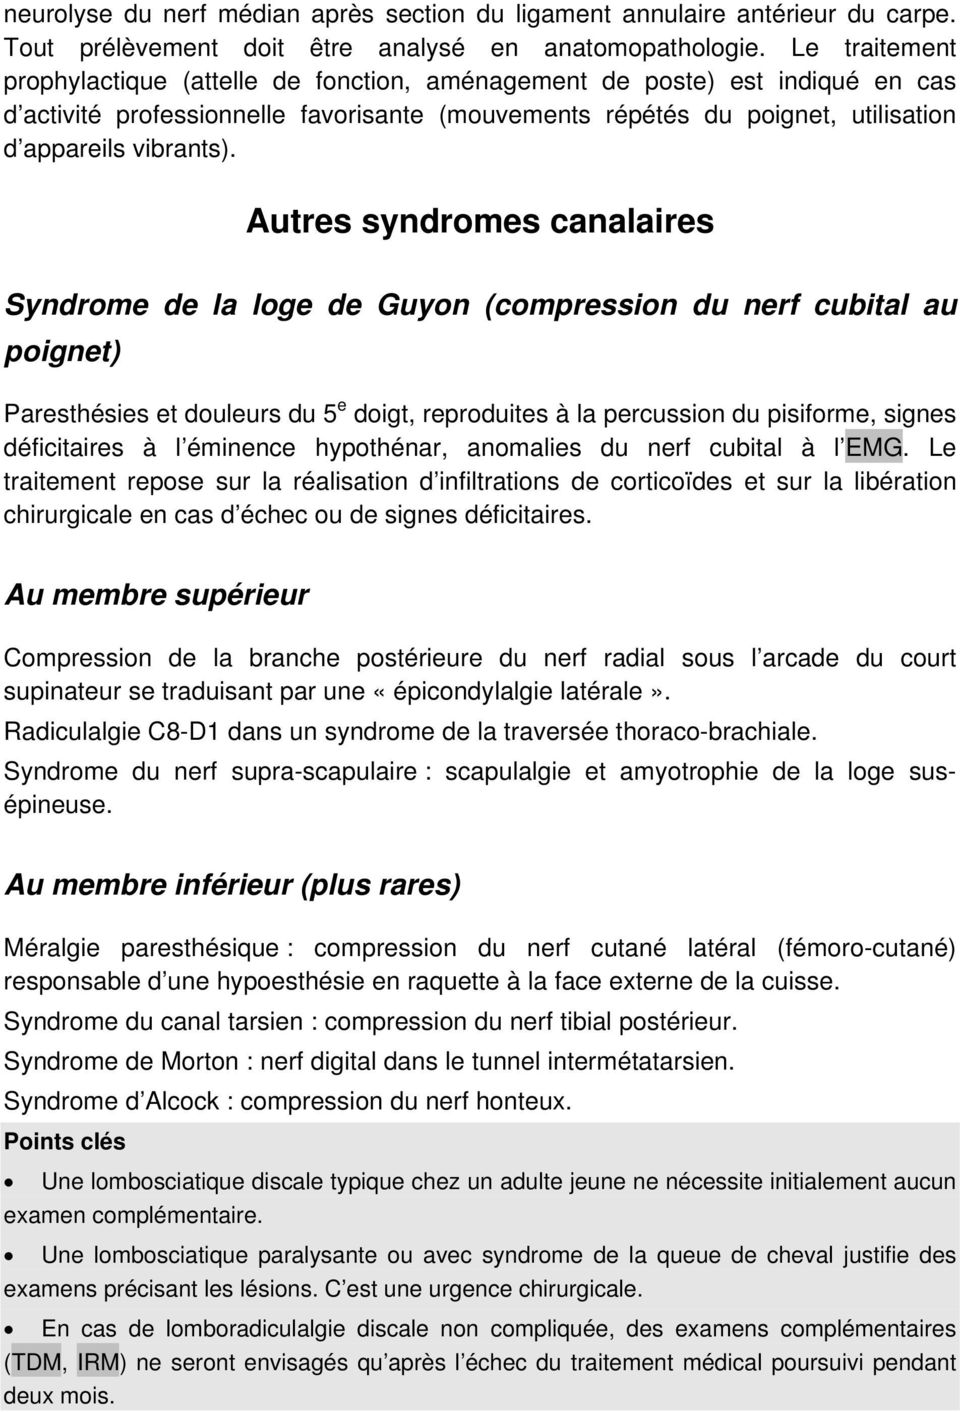 Autres syndromes canalaires Syndrome de la loge de Guyon (compression du nerf cubital au poignet) Paresthésies et douleurs du 5 e doigt, reproduites à la percussion du pisiforme, signes déficitaires